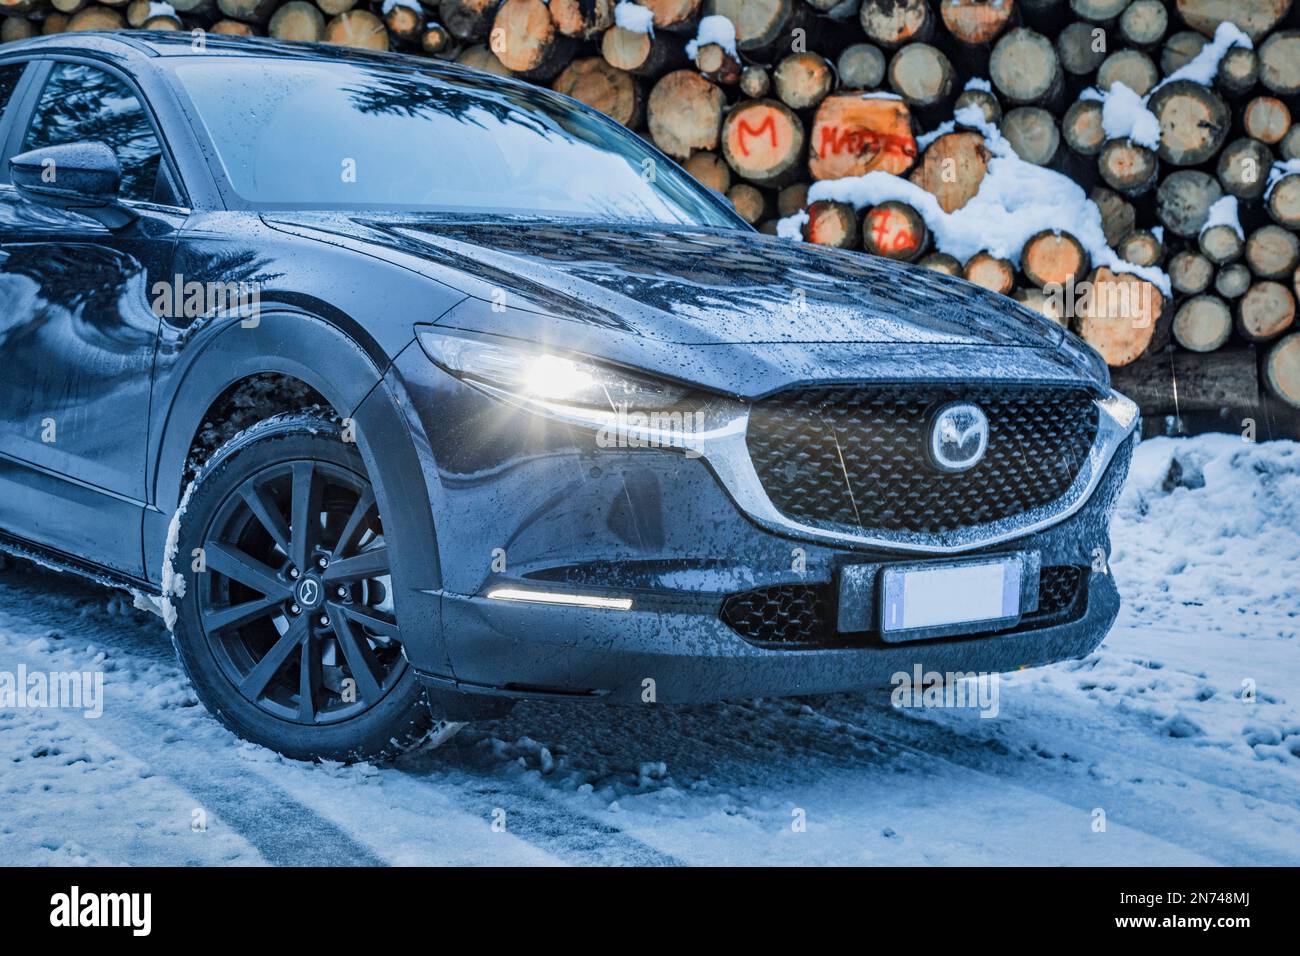 Italia, Veneto, Belluno, a Mazda Motor Corp CX-30 veicolo di servizio sportivo crossover (SUV) in inverno parcheggiato vicino ad un mucchio di tronchi di abete nelle Dolomiti Foto Stock